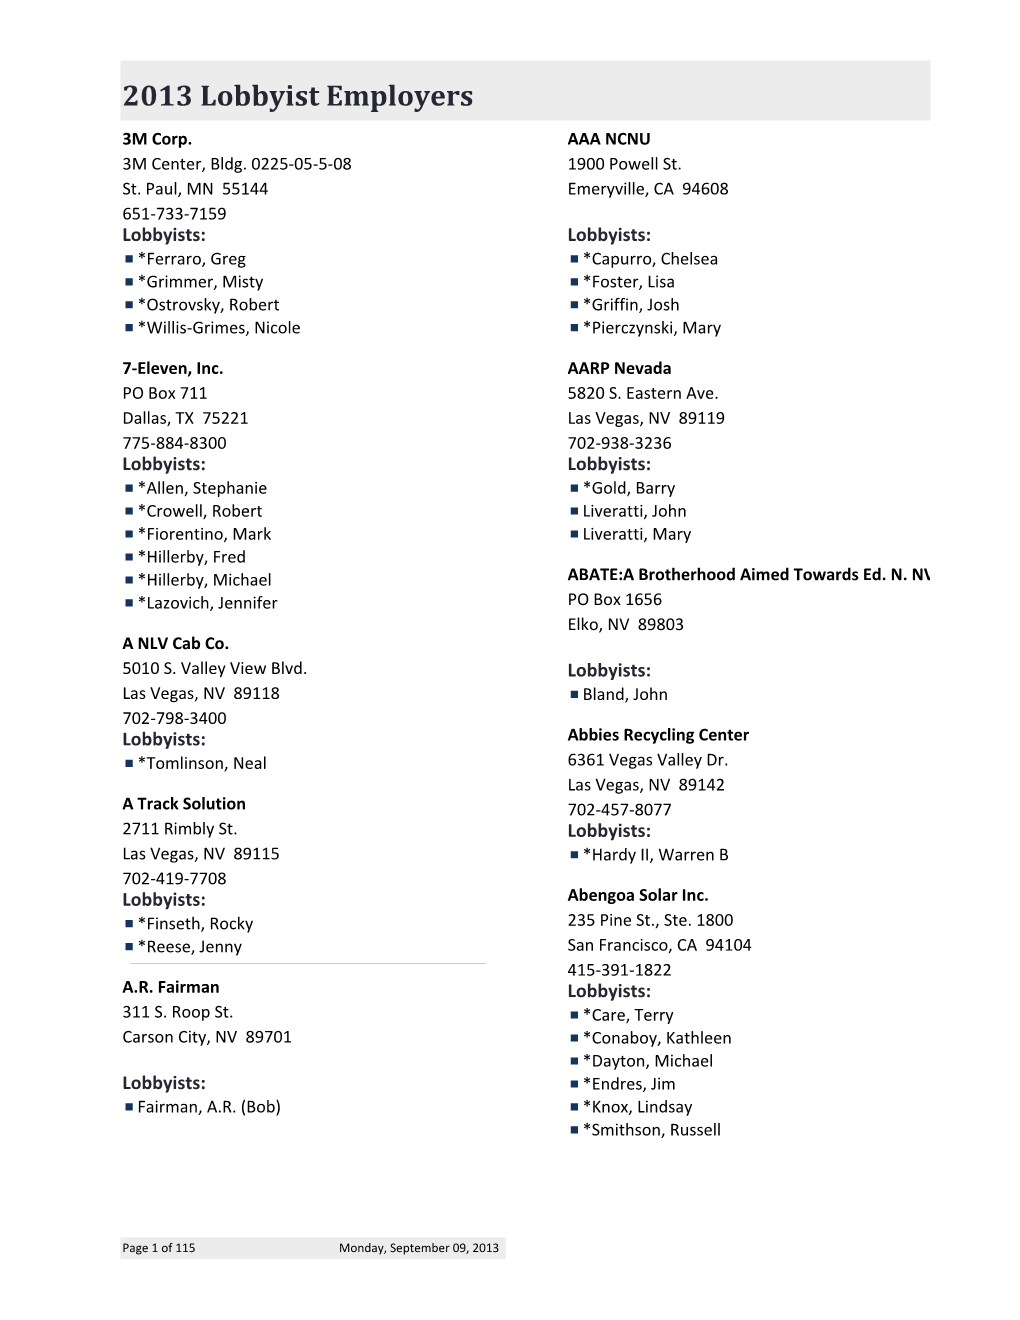 2013 Employer List